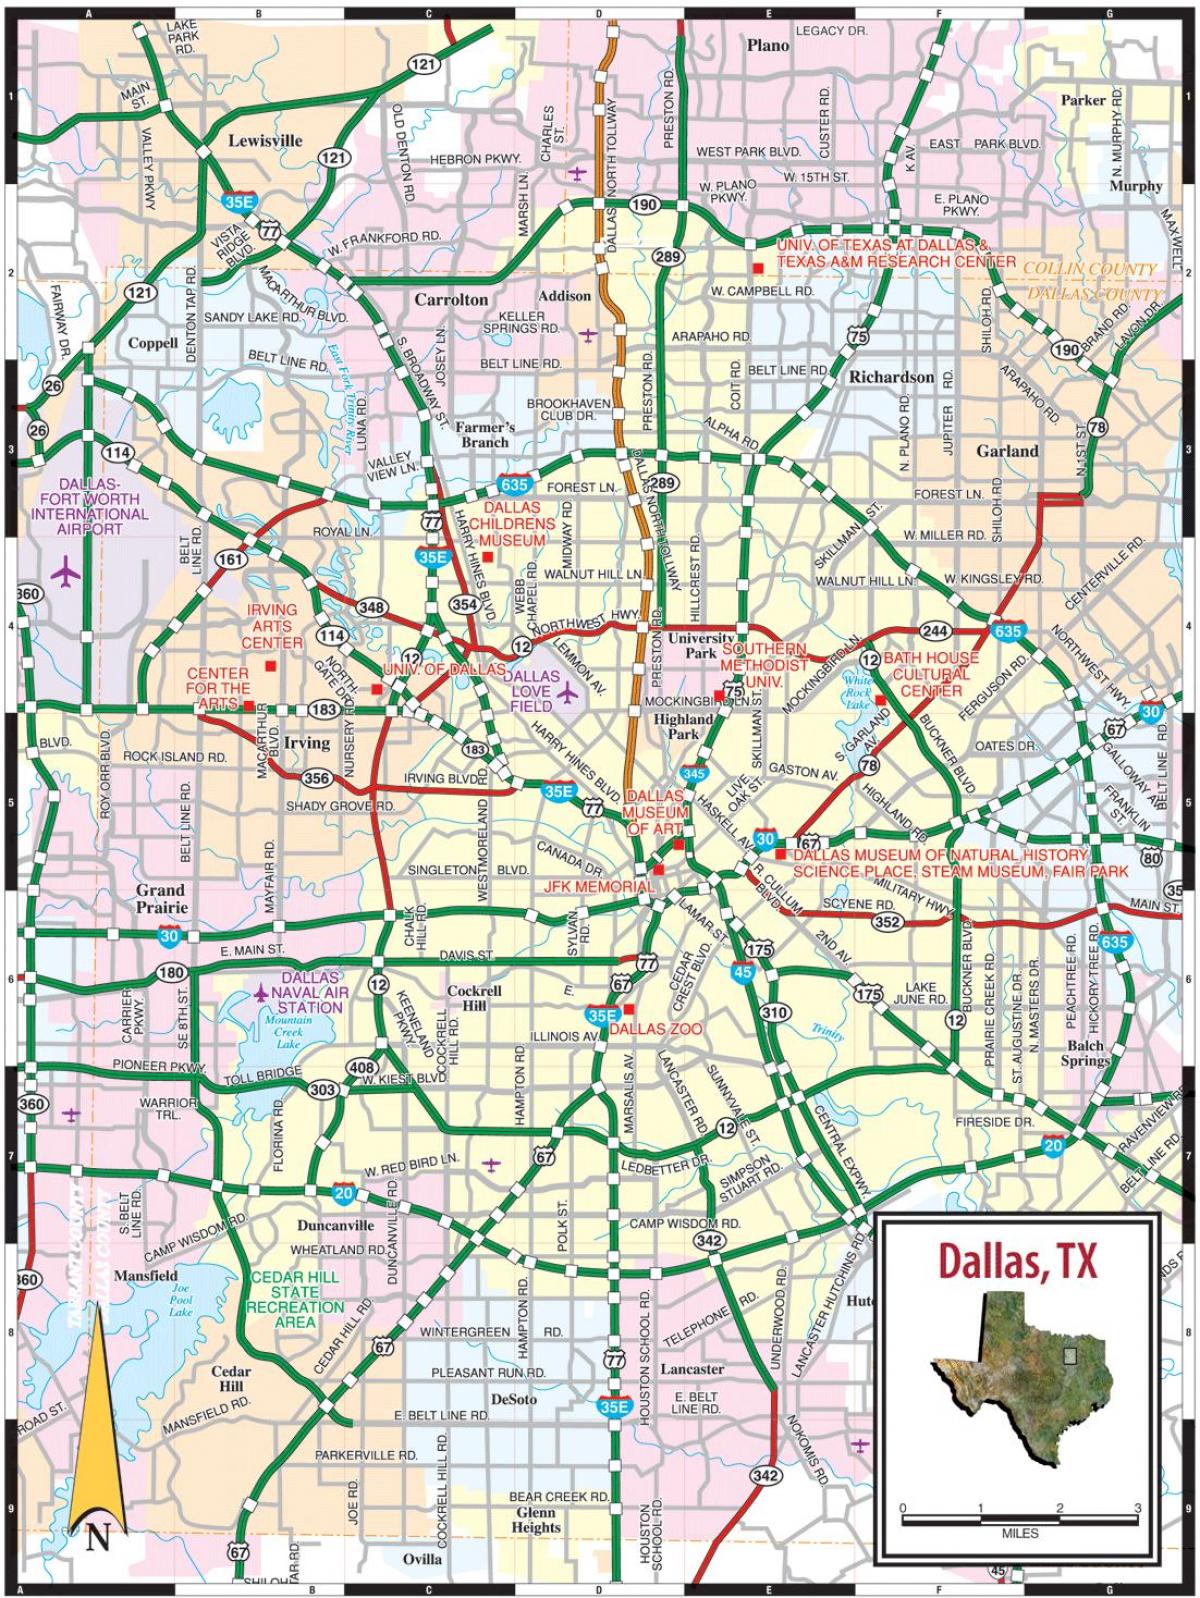 χάρτης της Dallas tx